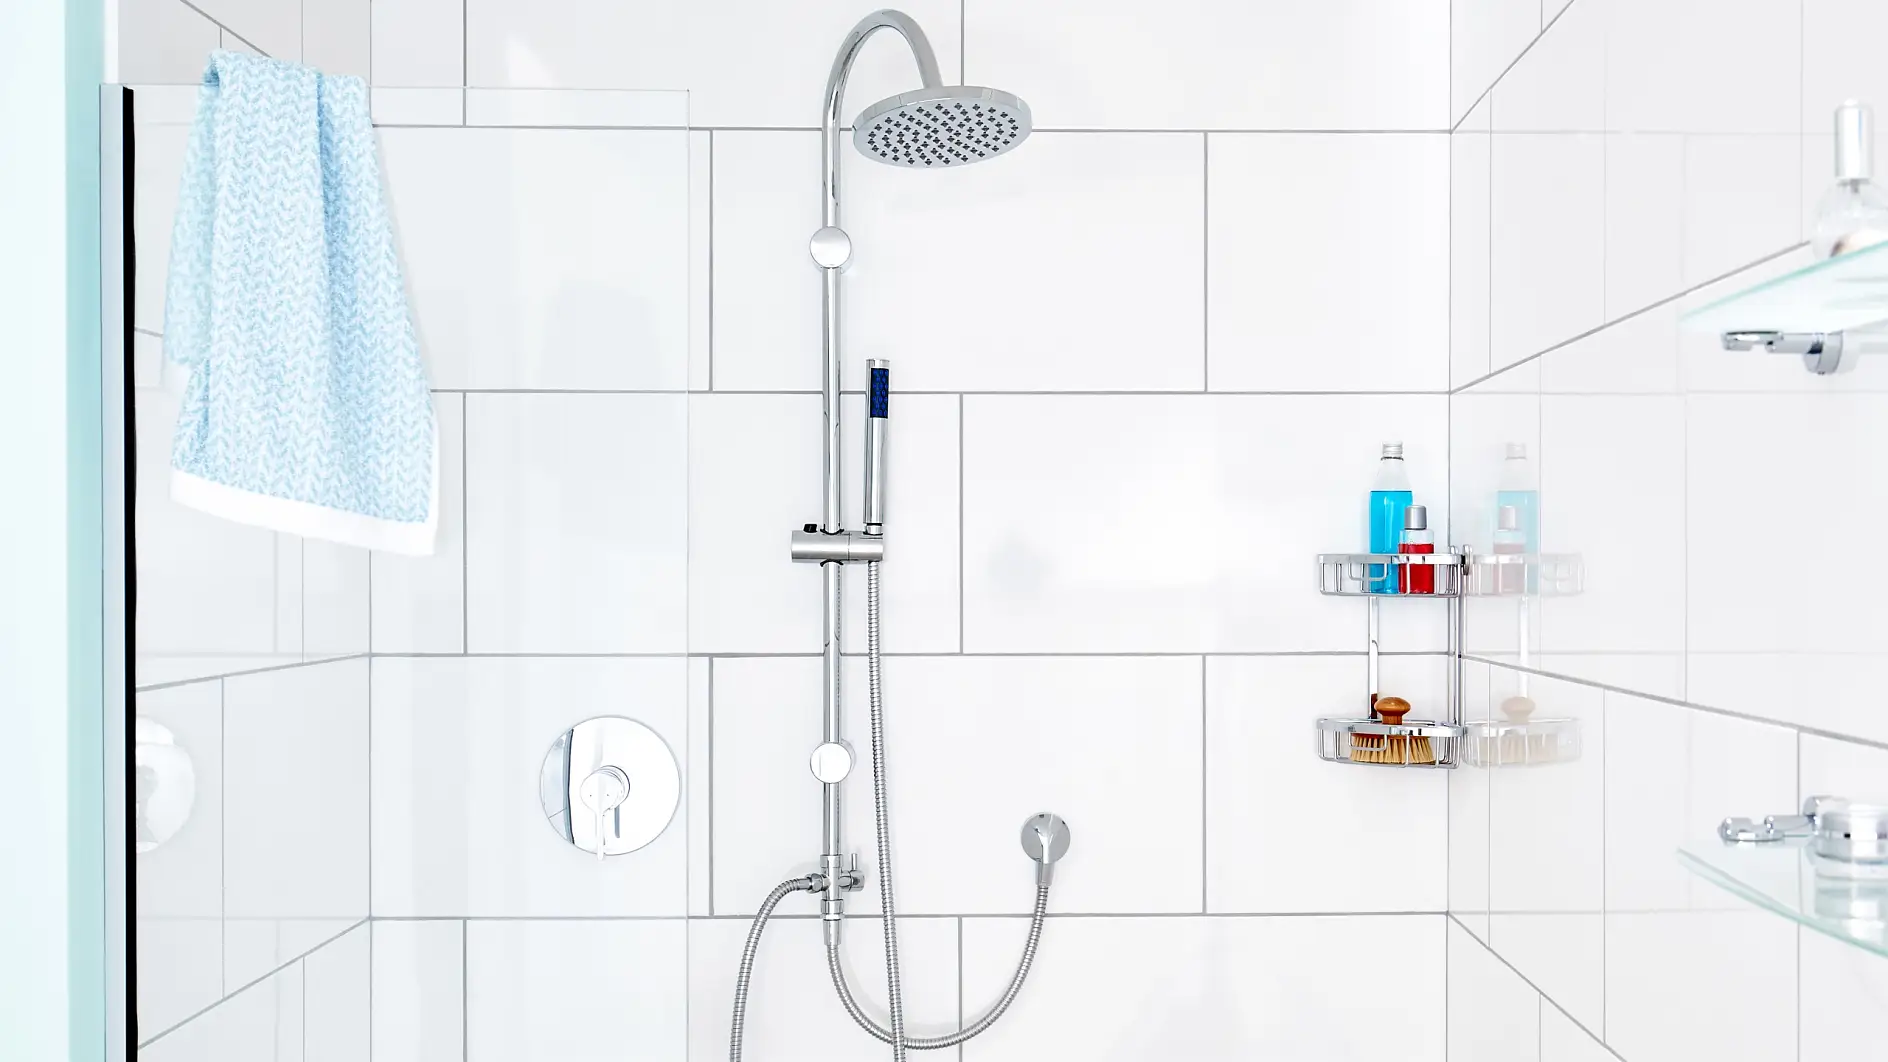 A peça central do seu chuveiro. O design da nossa barra de duche minimalista otimiza o fluxo e a experiência do seu duche.